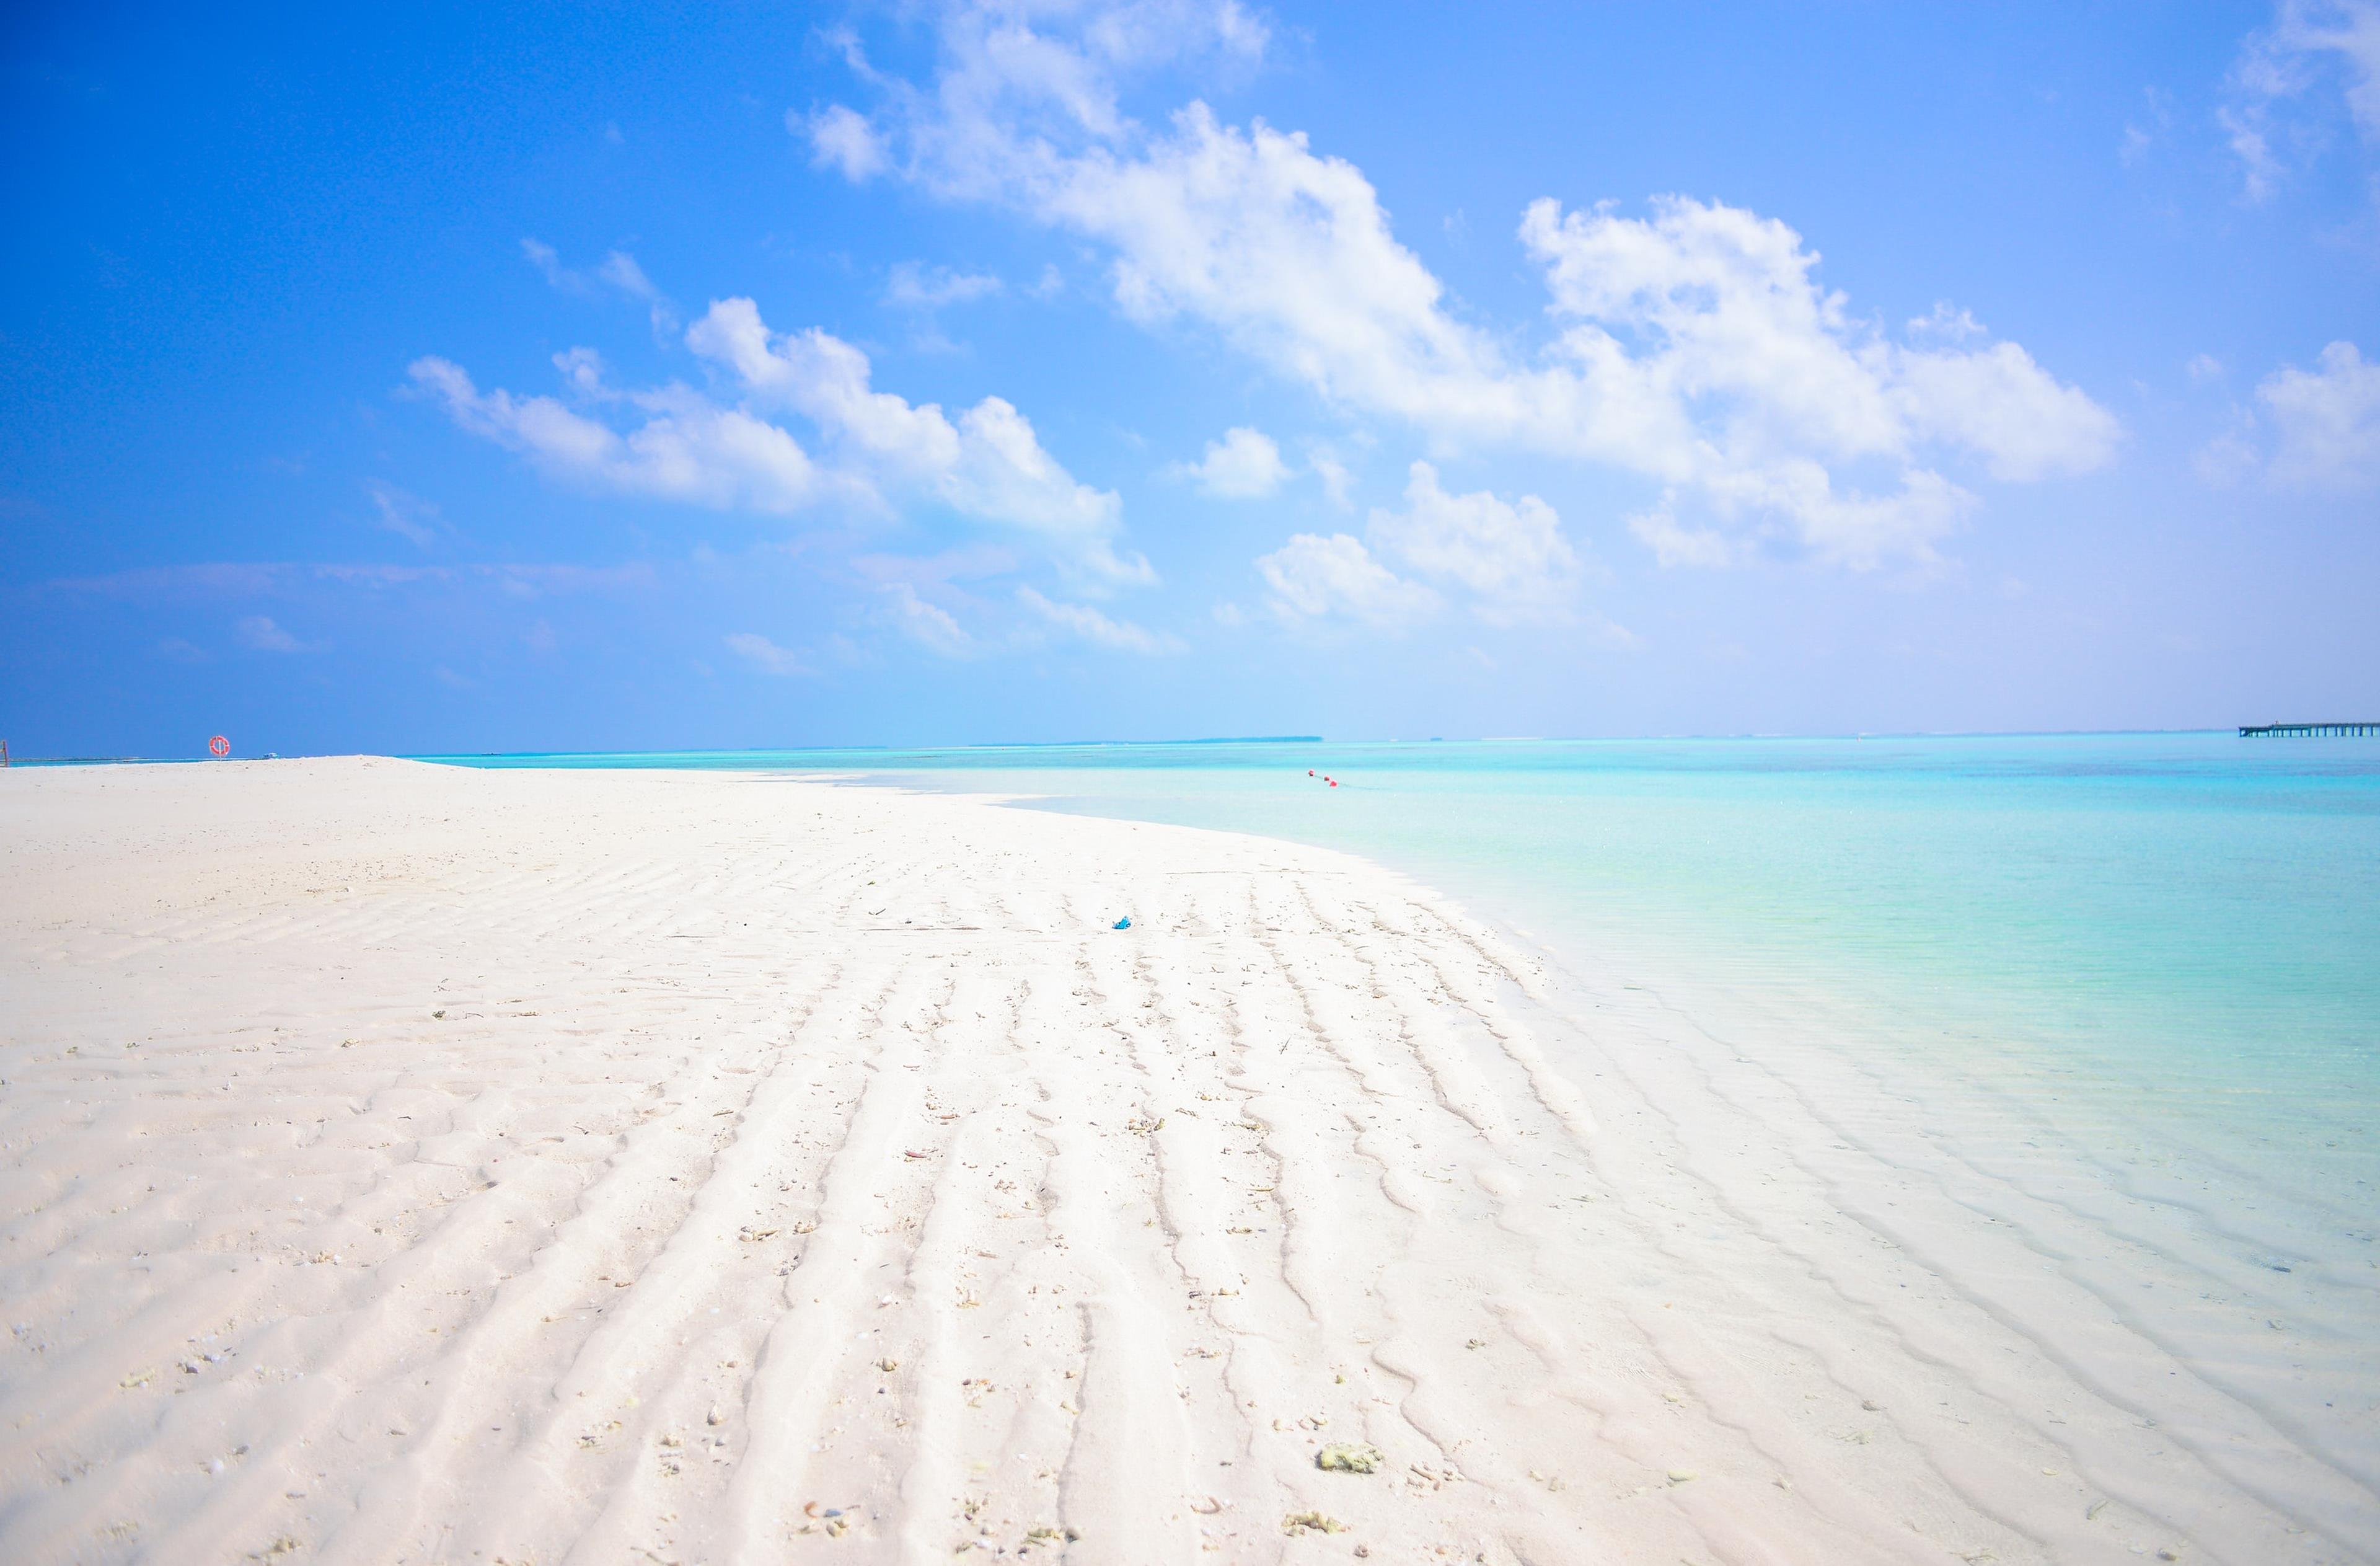 Spiaggia bianca bagnata da un mare azzurro